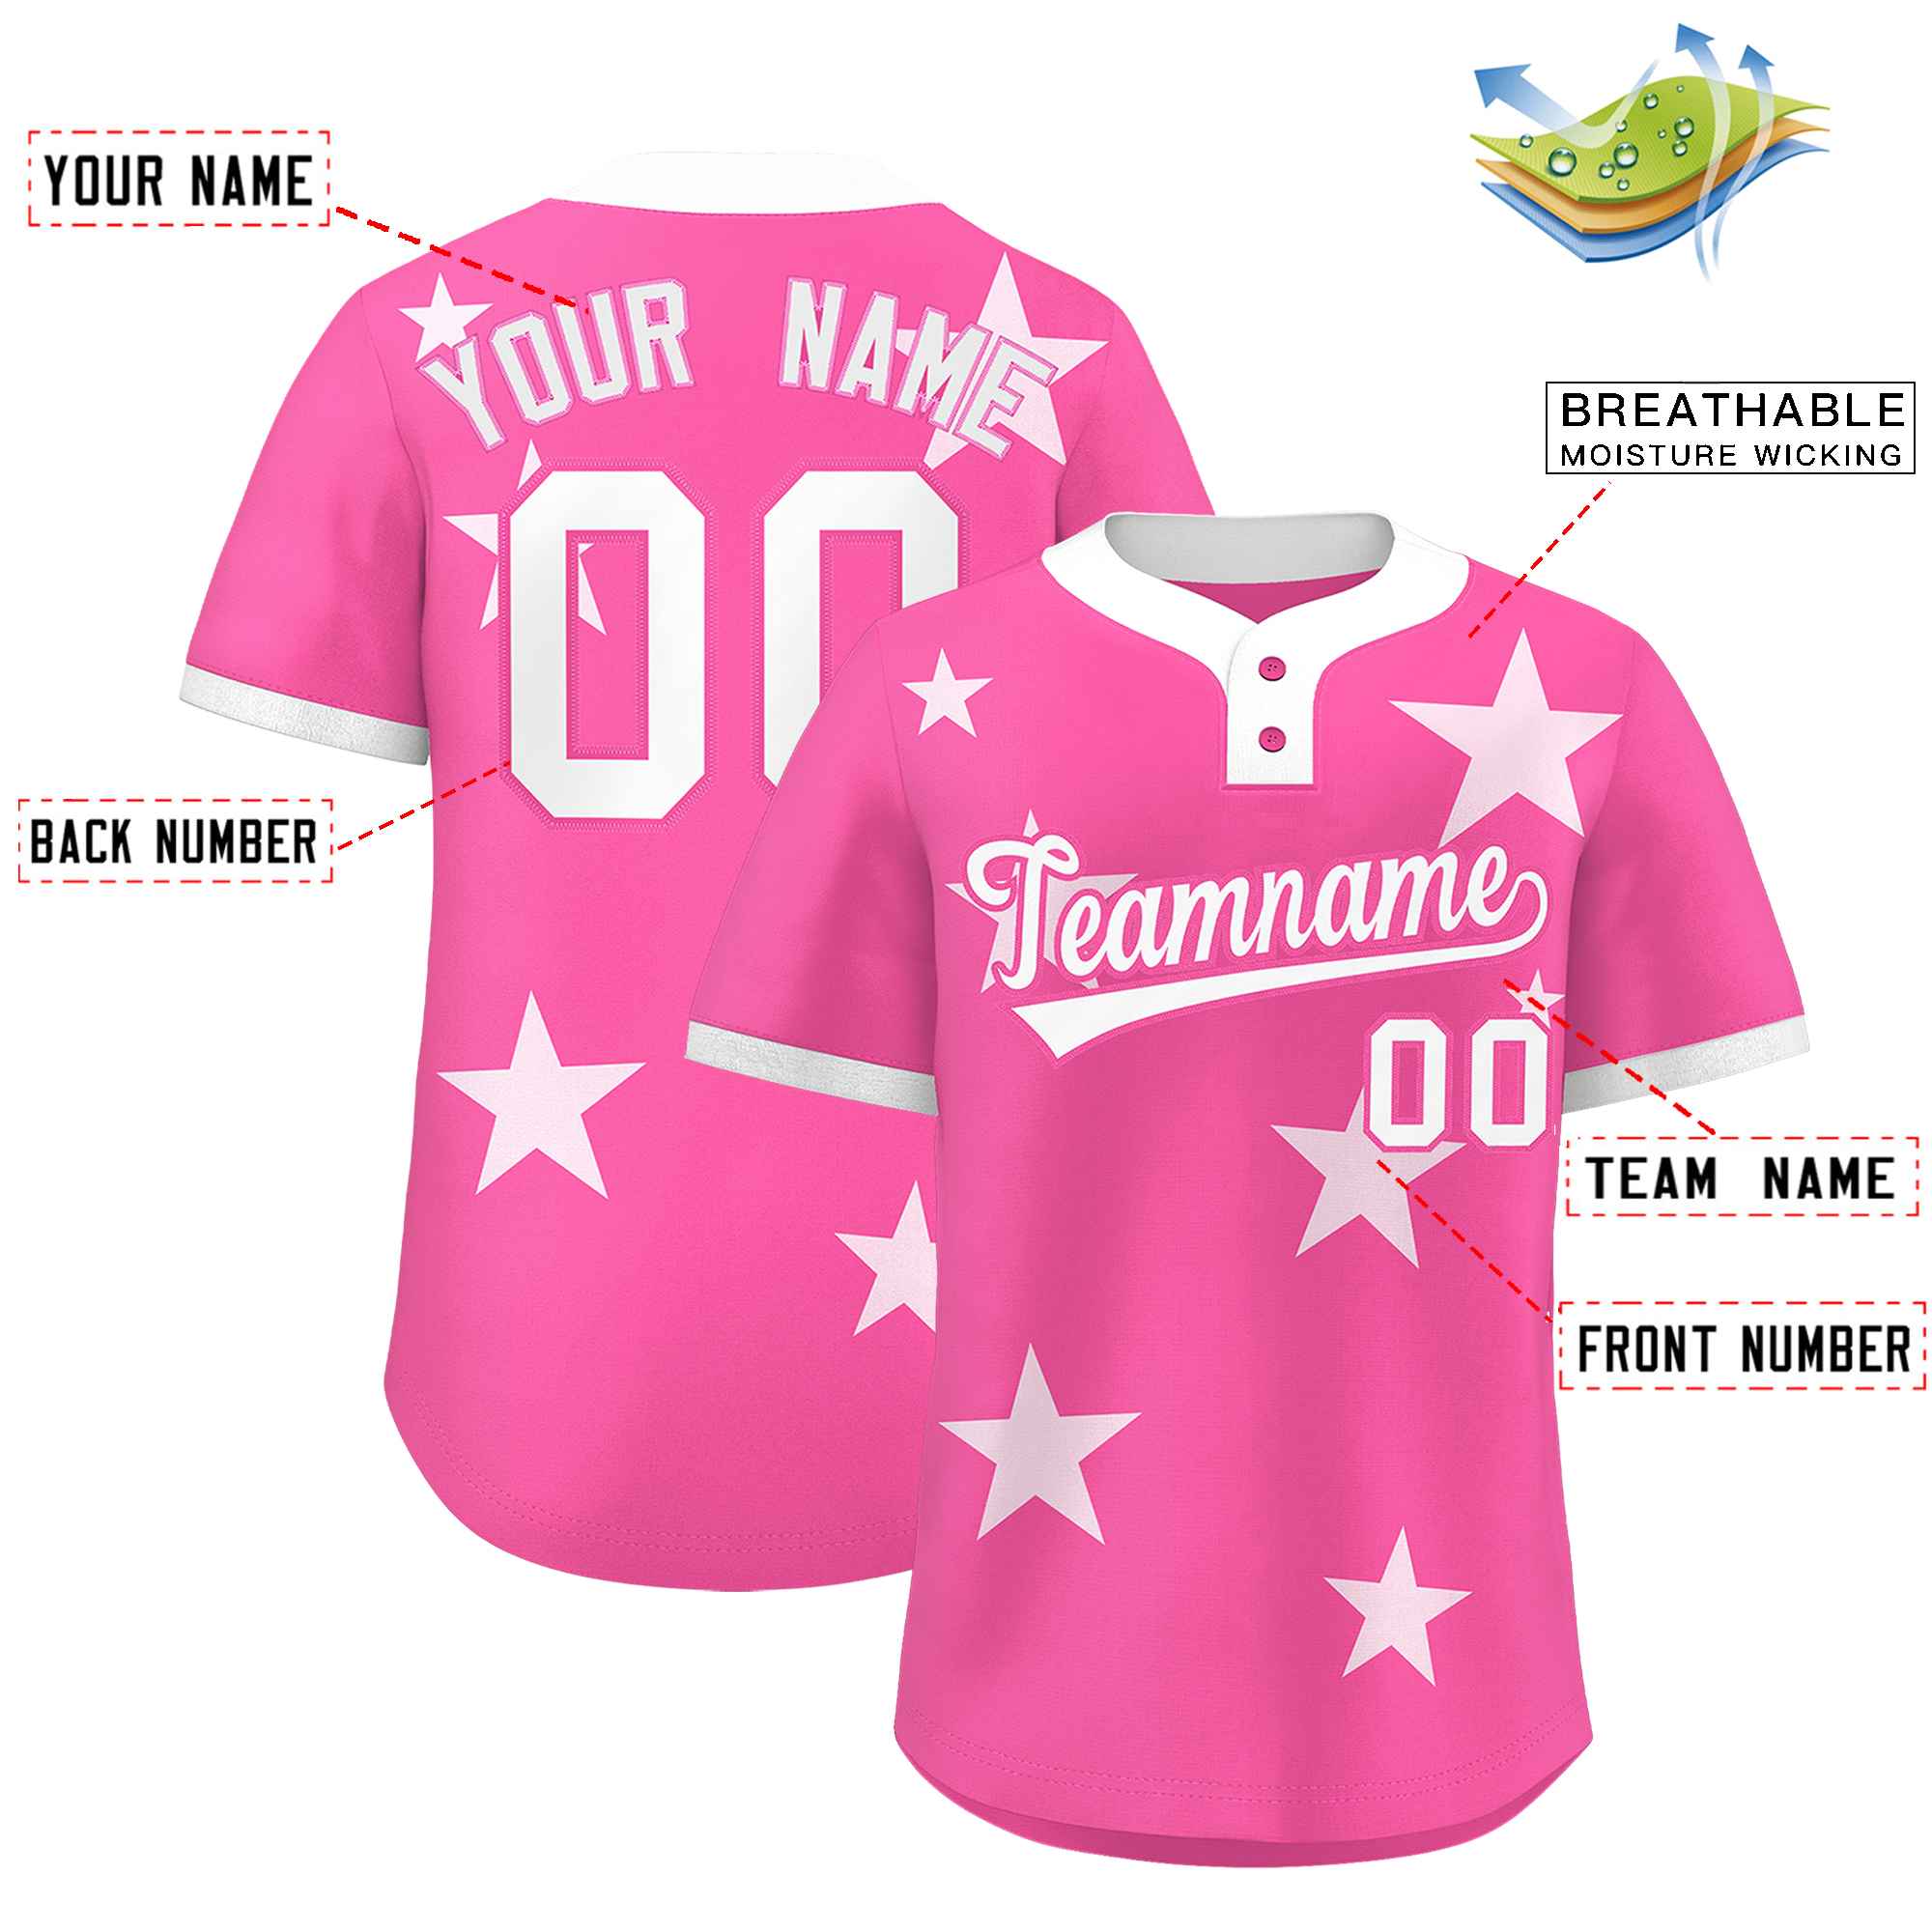 Custom Pink White Personalized Star Graffiti Pattern Authentic Two-Button Baseball Jersey